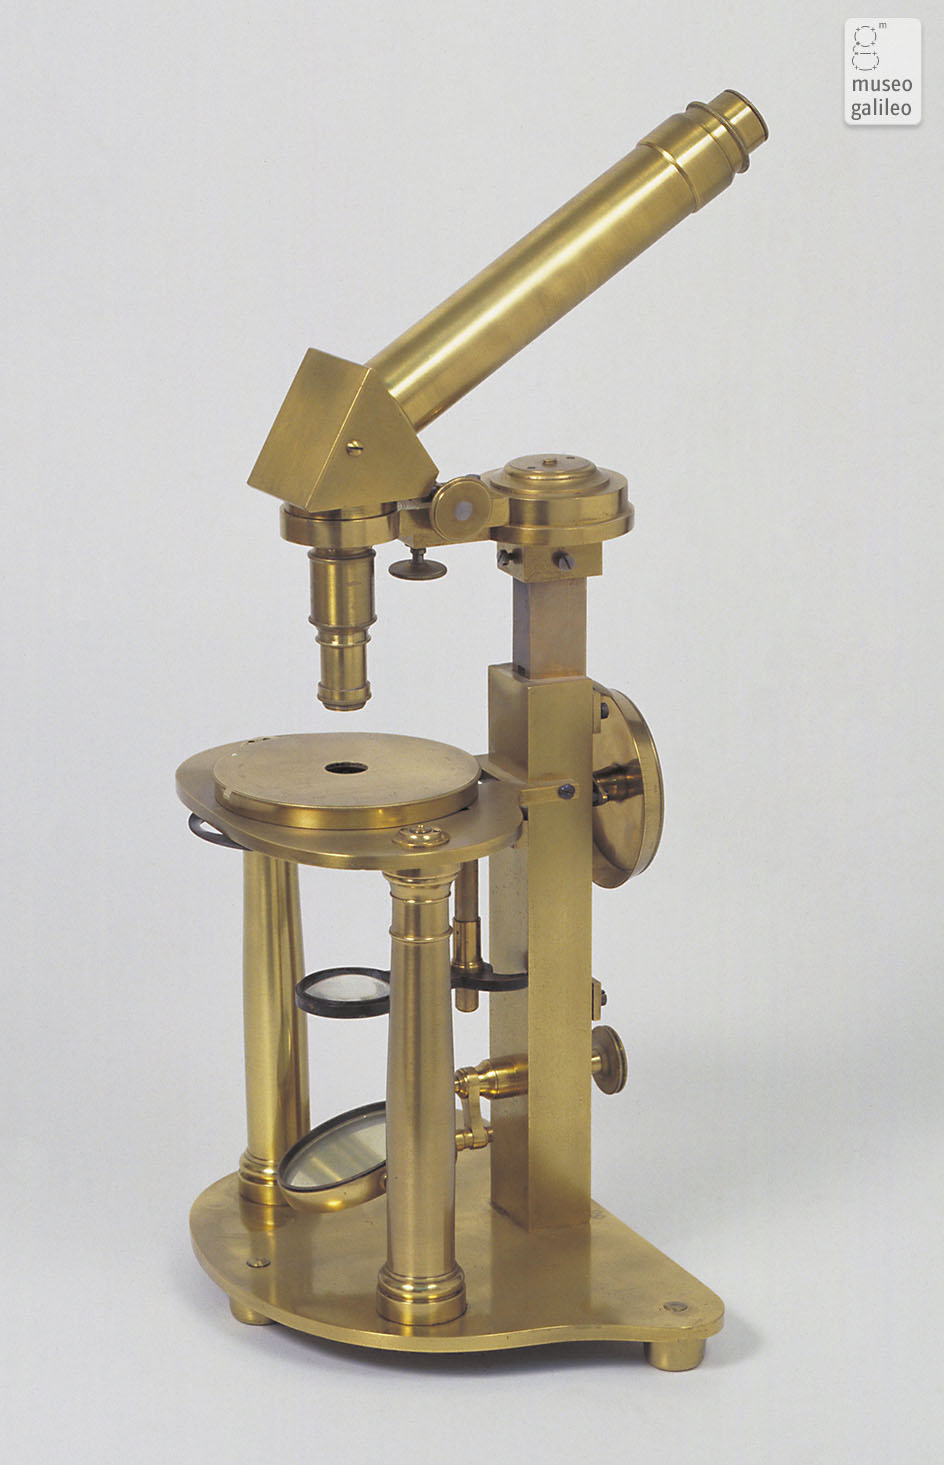 Compound microscope (Inv. 2660)